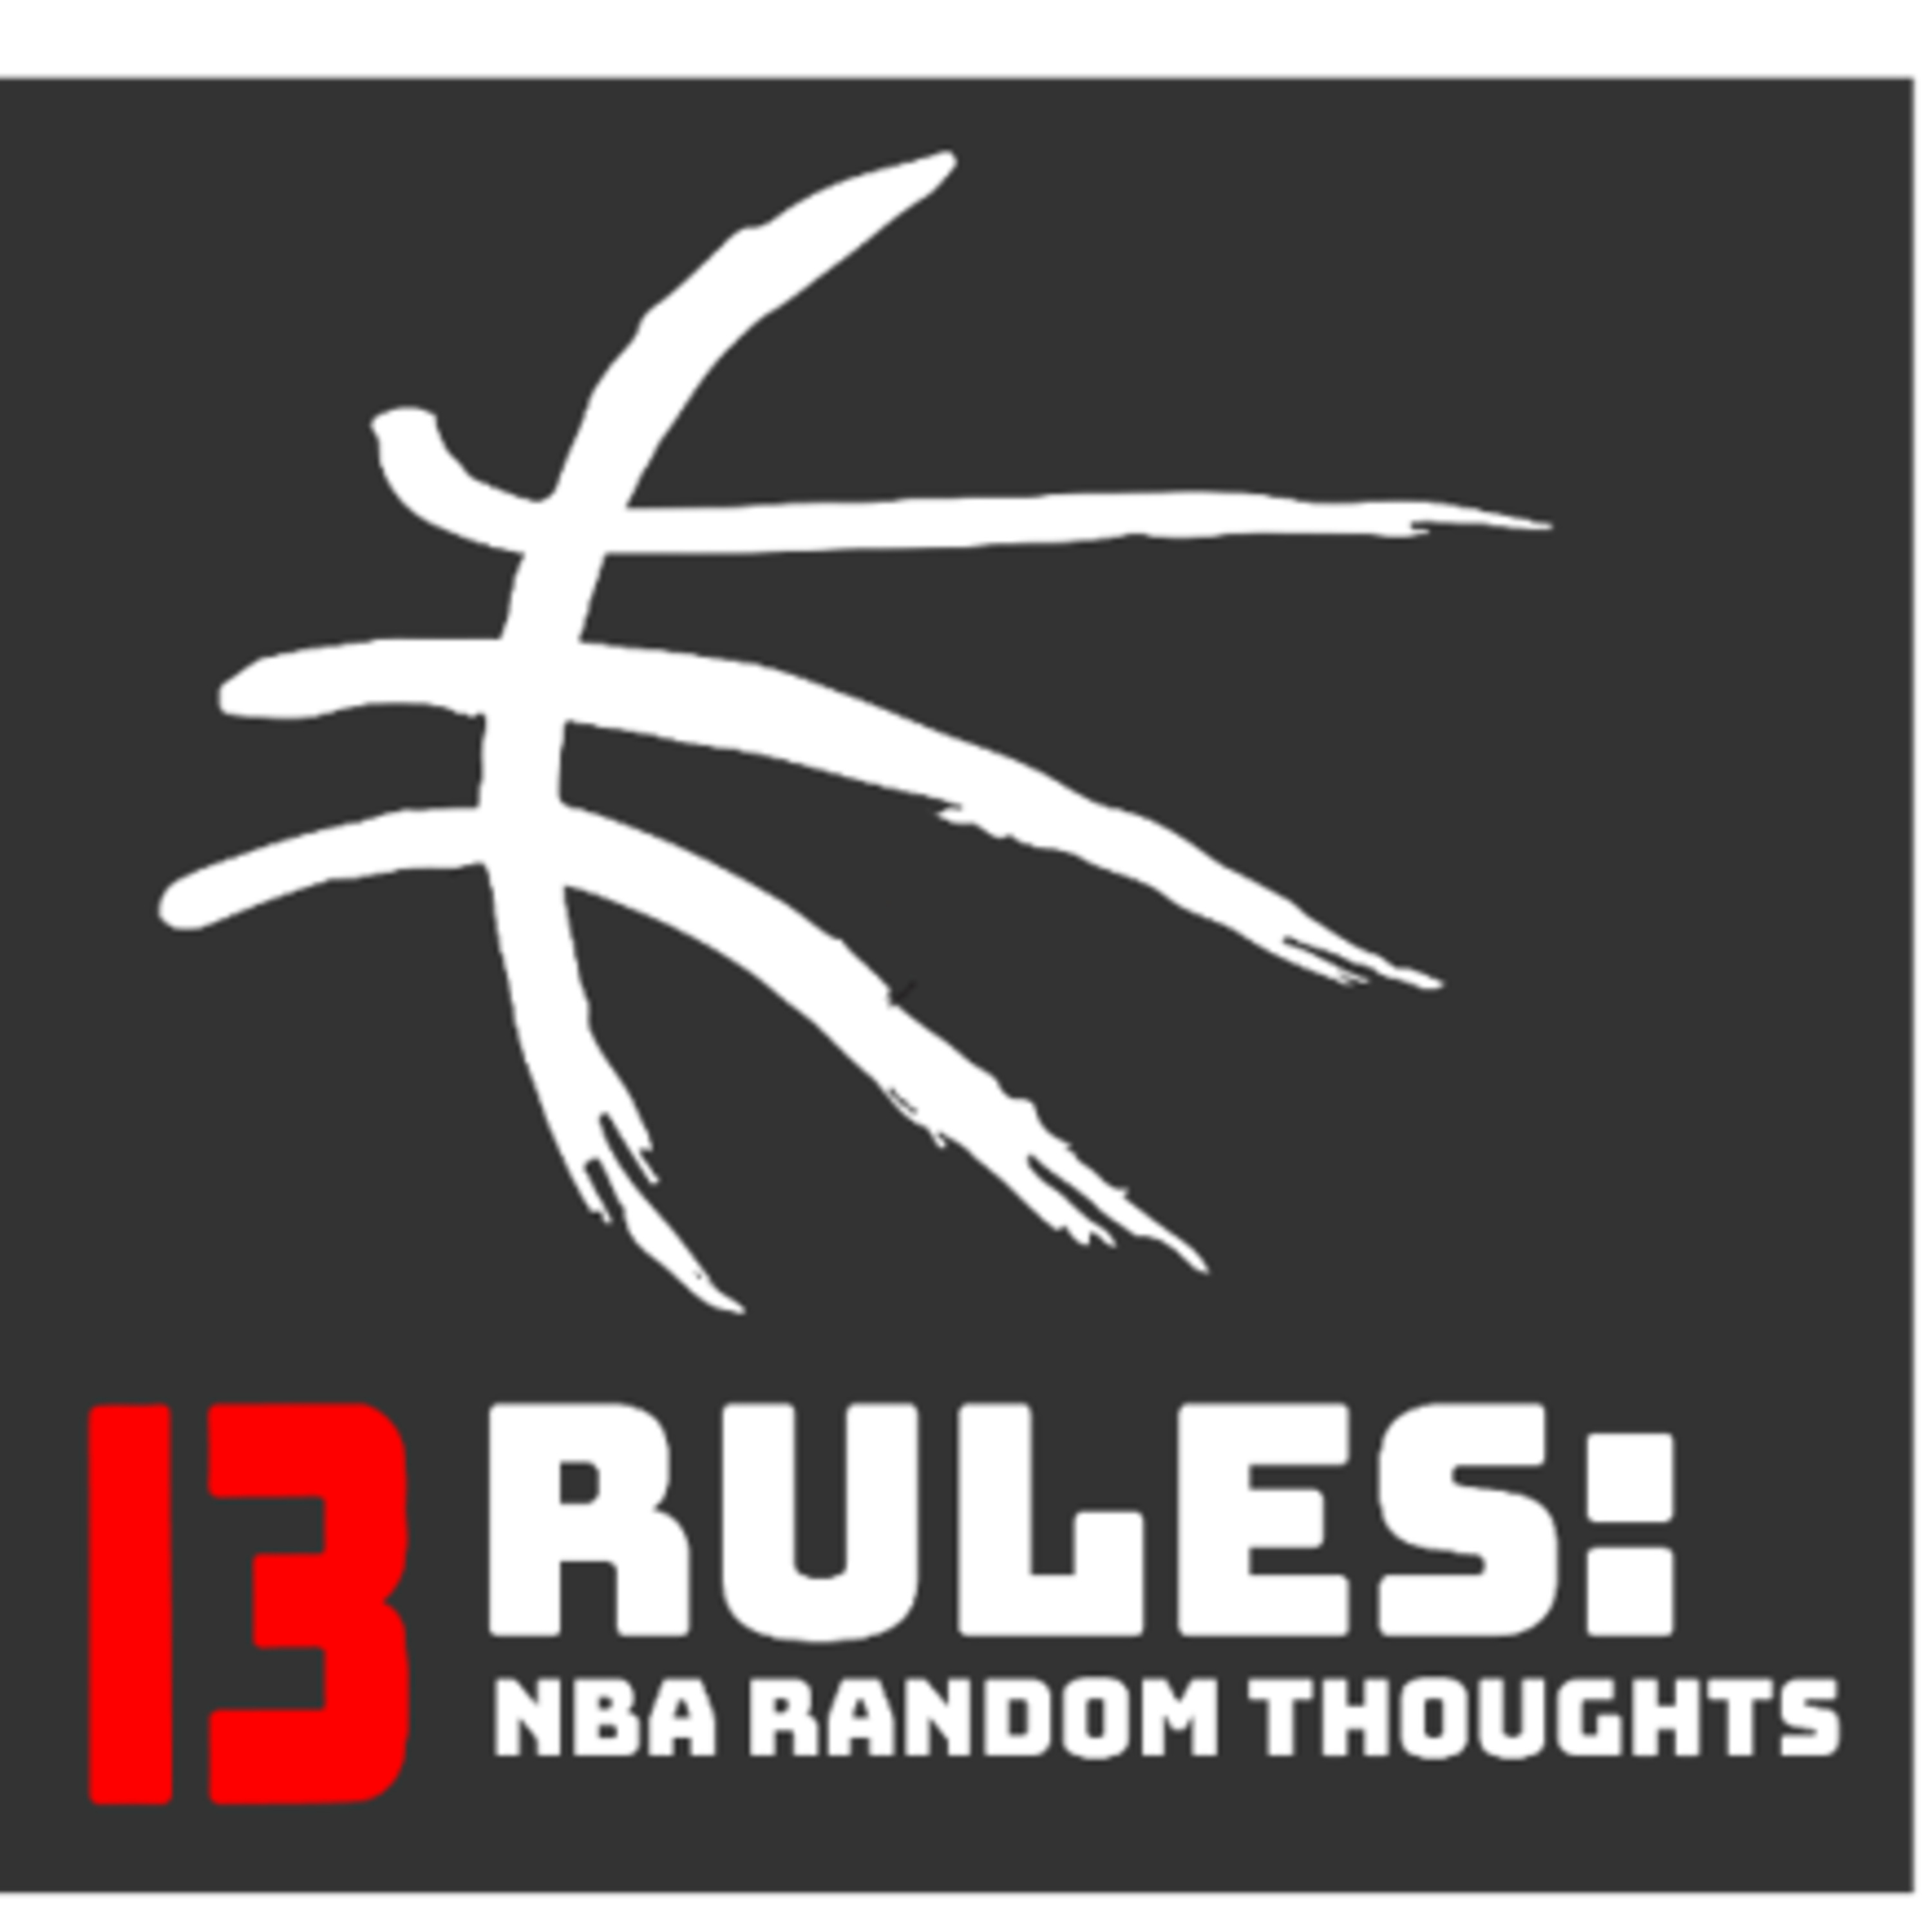 13 Rules: NBA Random Thoughts - Week 2